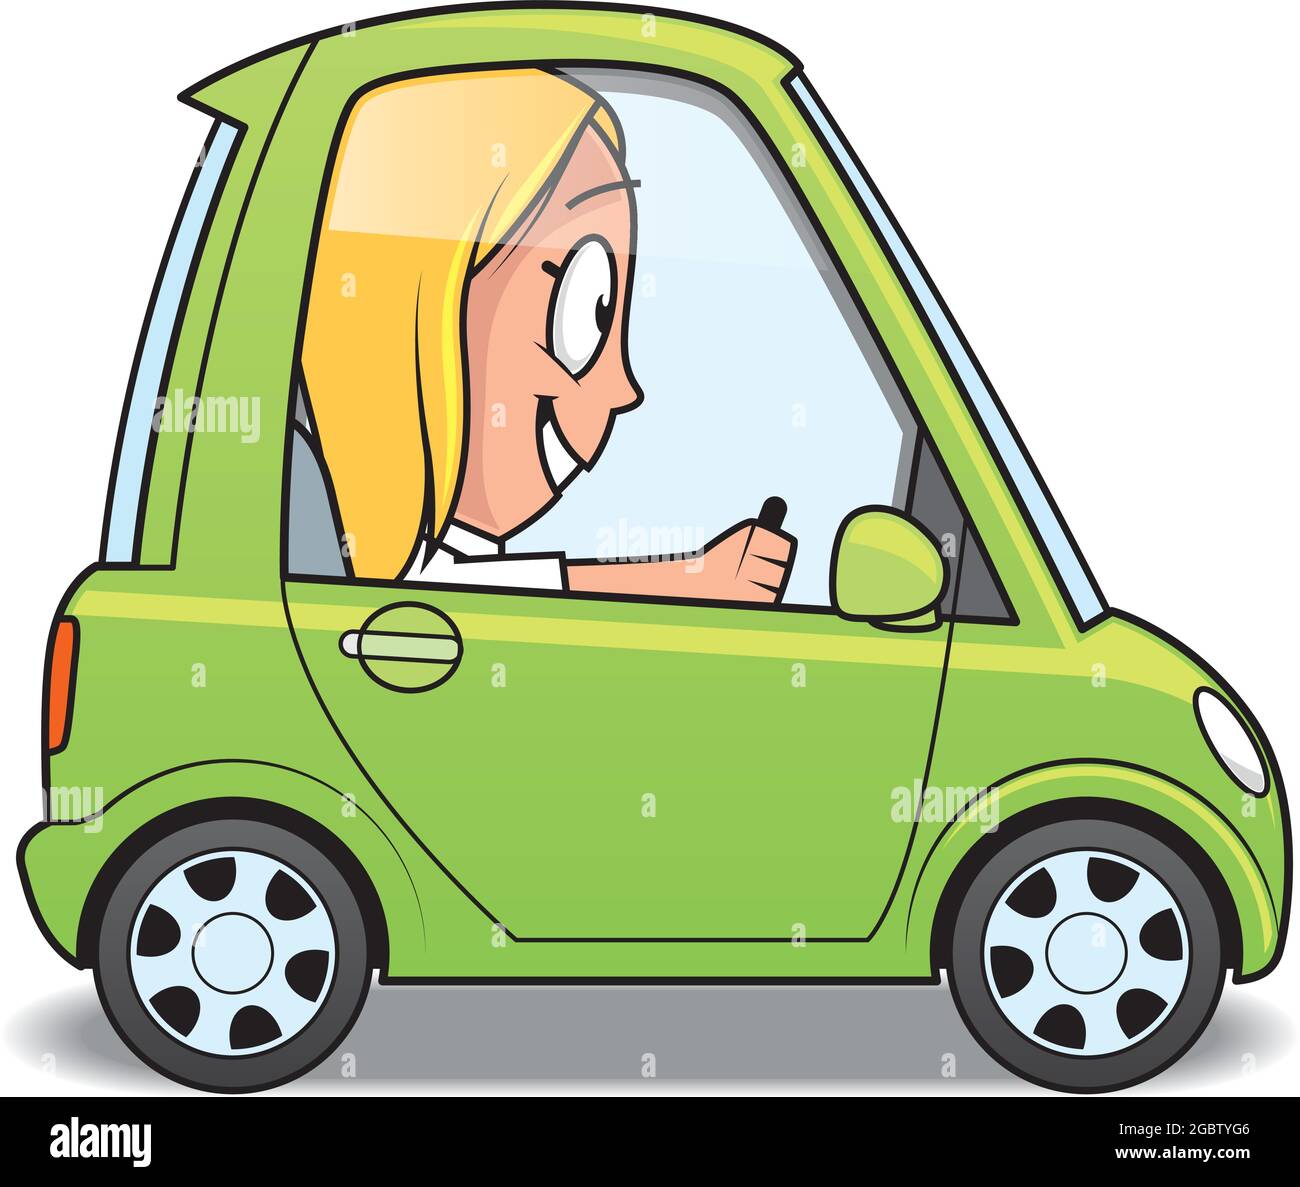 Cartoon-Illustration einer Frau Figur fahren ein Auto Stock Vektor